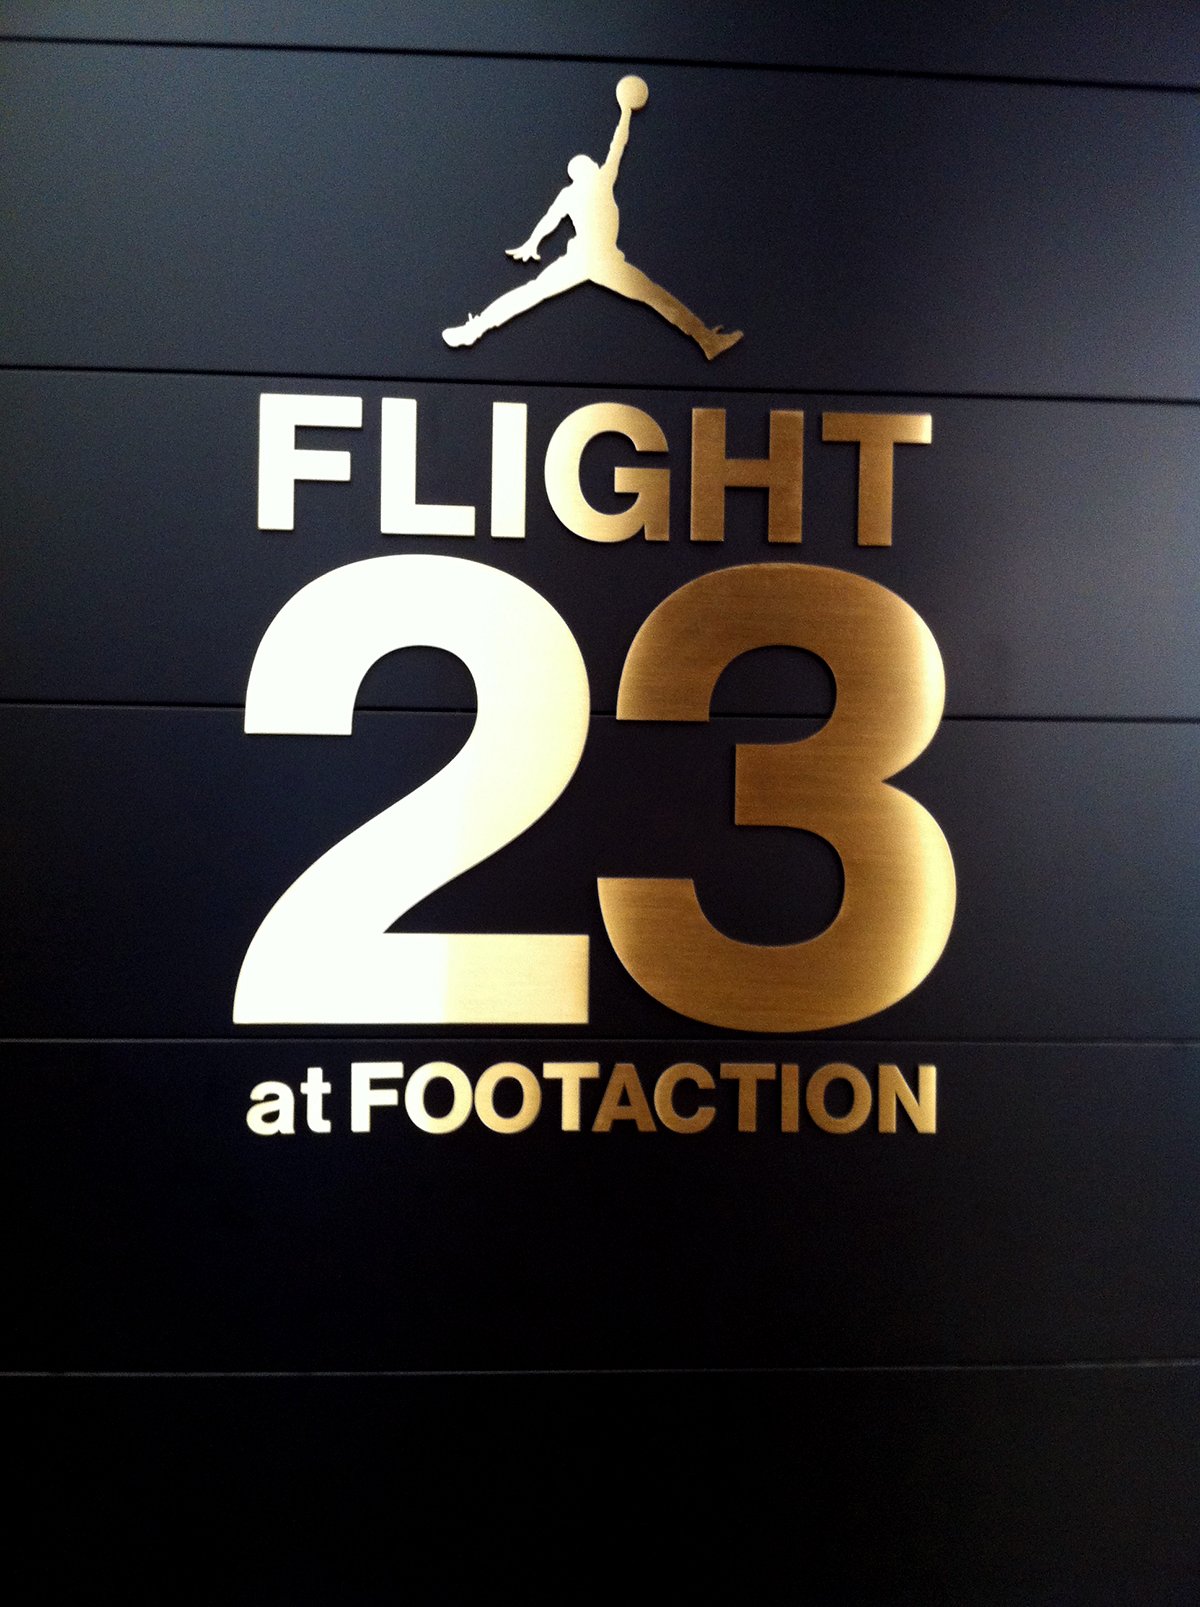 flight 23 la tienda de jordan en nueva york en viva basquet